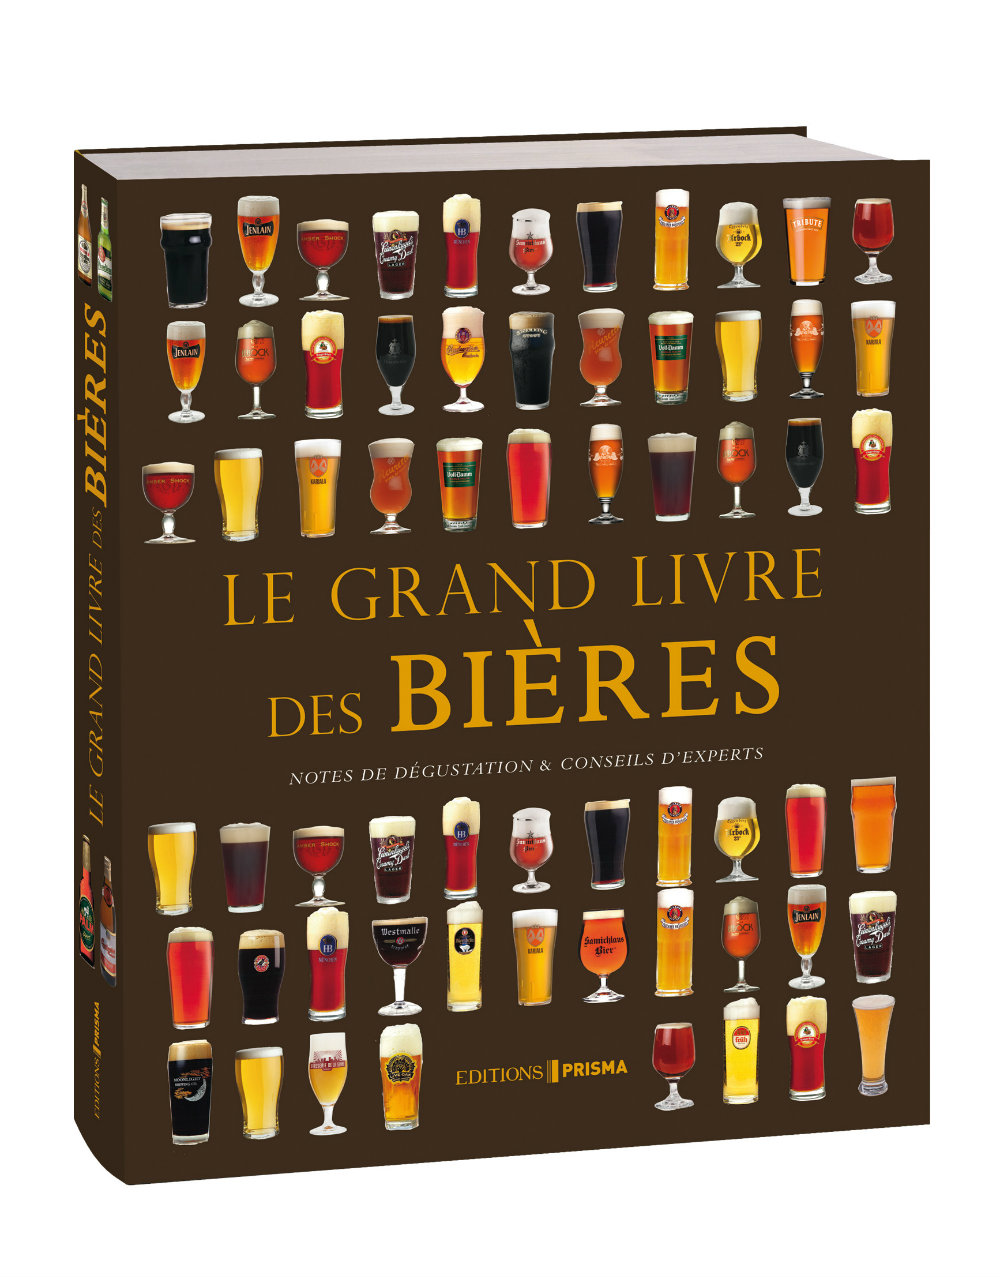 Le Grand livre des bières